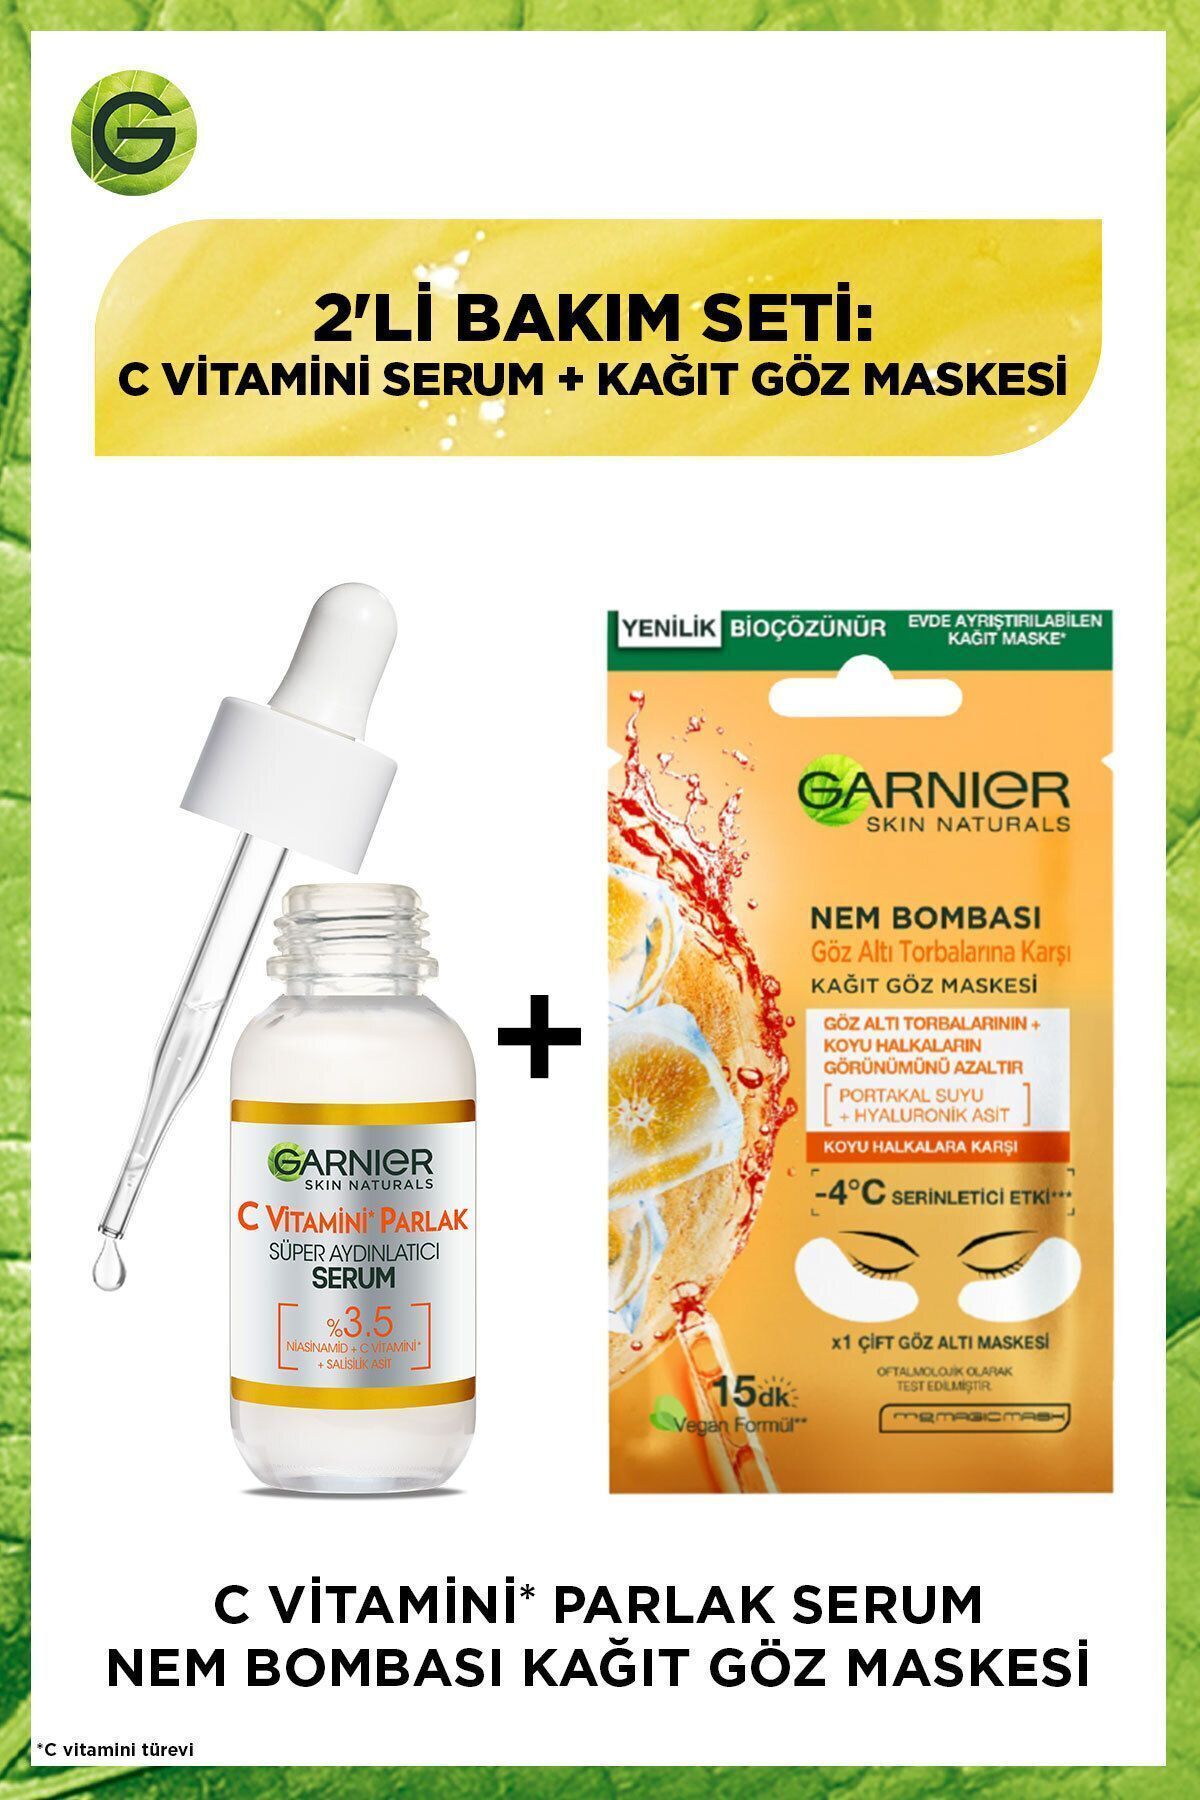 Garnier C Vitamini Parlak Super Aydınlatıcı Serum 30ml+Göz Altı Torbalarına Karşı Kağıt Göz Maskesi